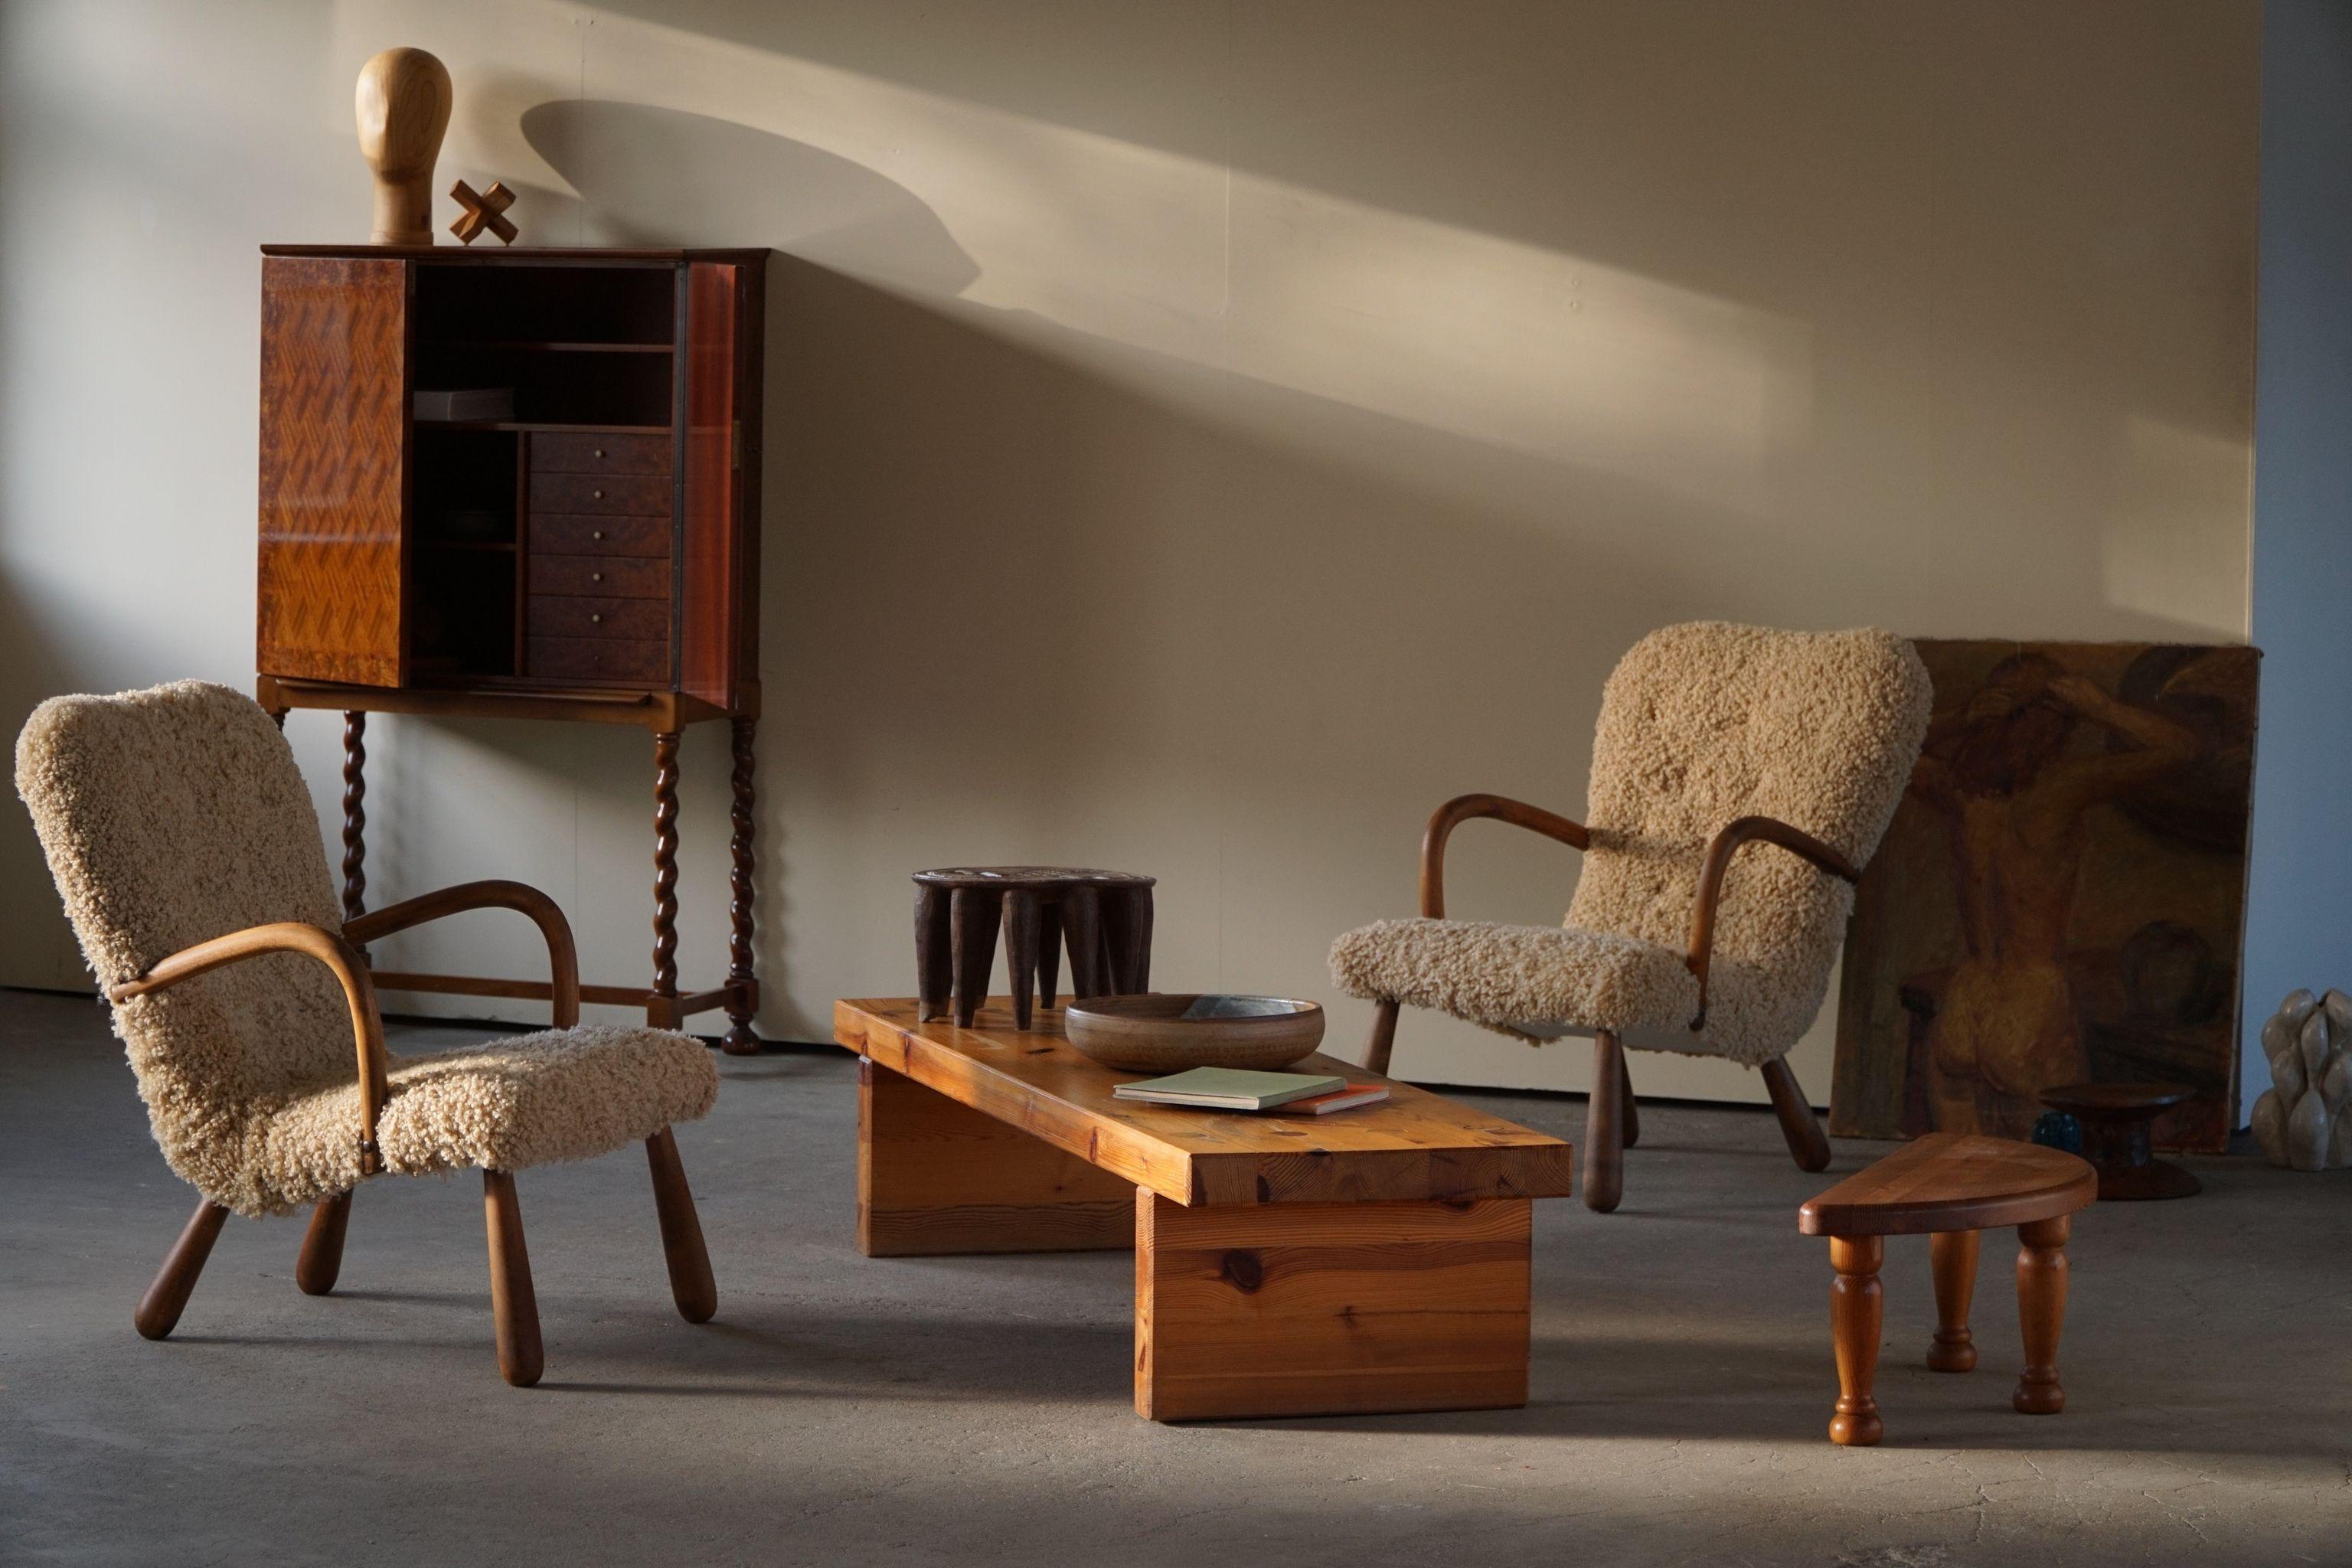 La plus étonnante paire de fauteuils de palourde fabriqués dans le style d'Arnold Madsen. 
Ces chaises ont été produites par Skive Møbelfabrik dans les années 1950 et ont été restaurées dans le respect de son histoire. Rembourré en laine d'agneau de